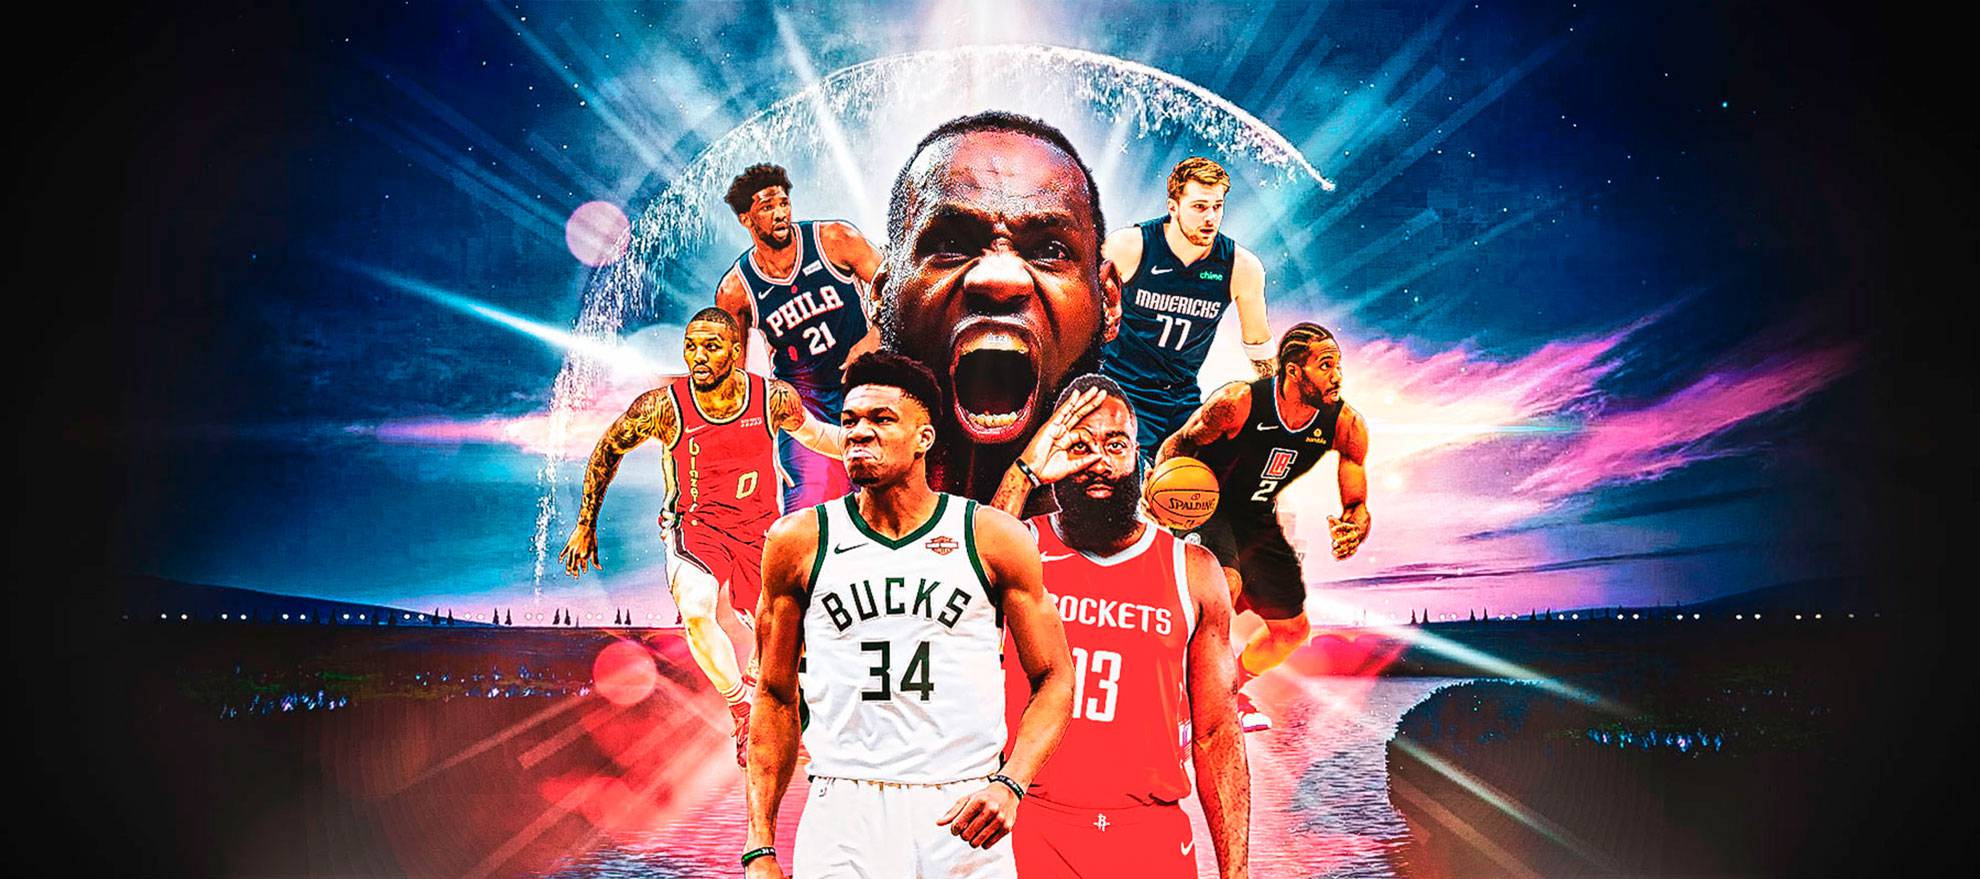 El sueño de la burbuja: la NBA 2019-20 regresa en Disney